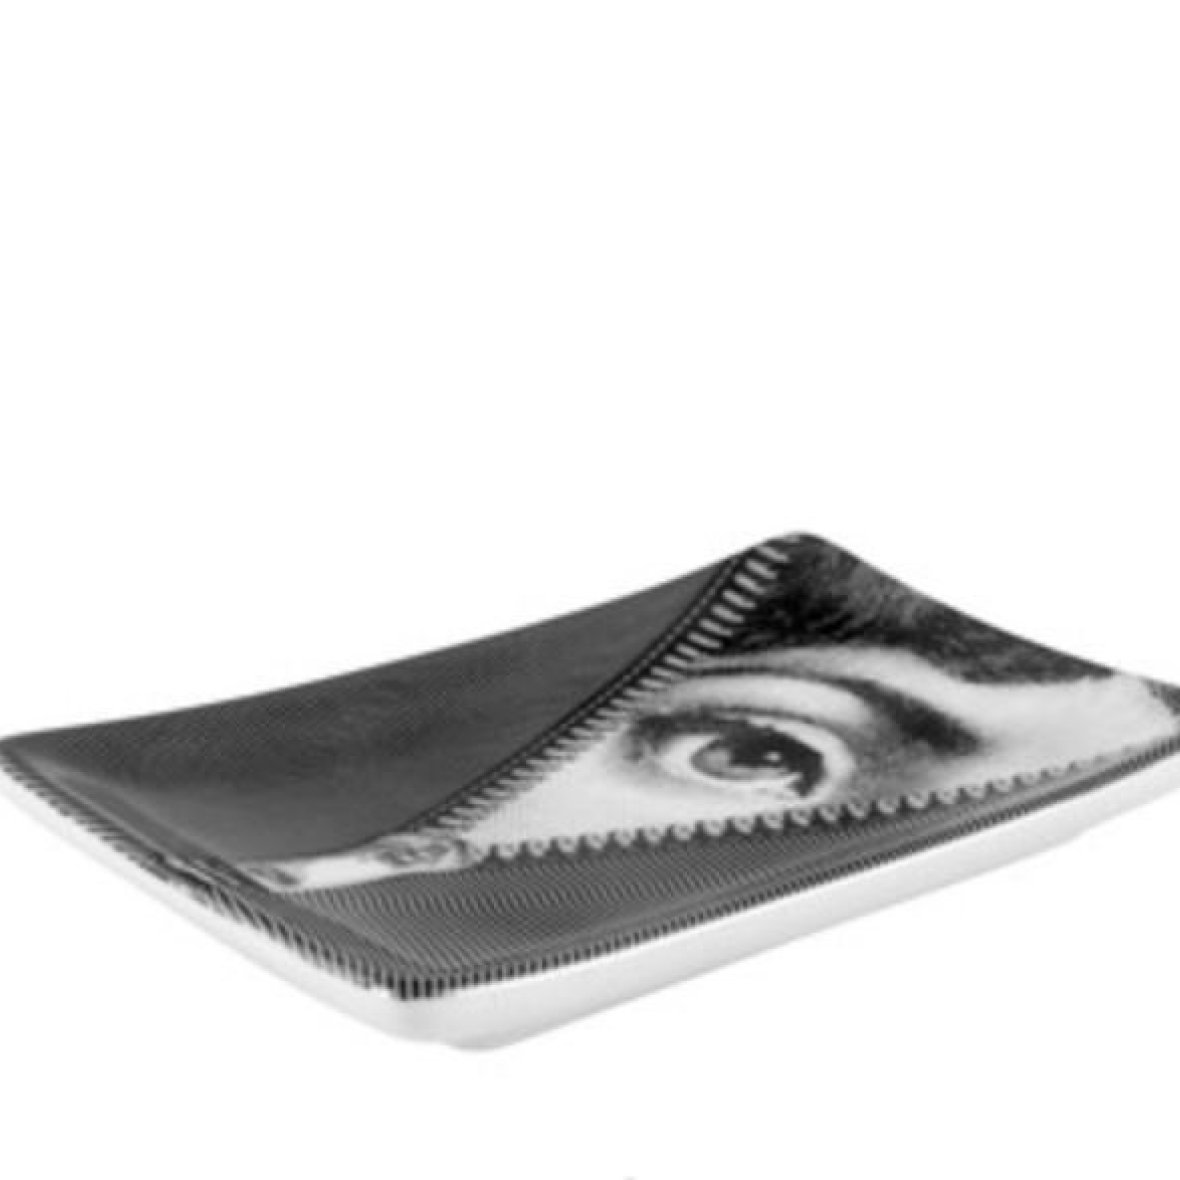 rectangular-ashtray-tema-e-variazioni-n-401-white-black7